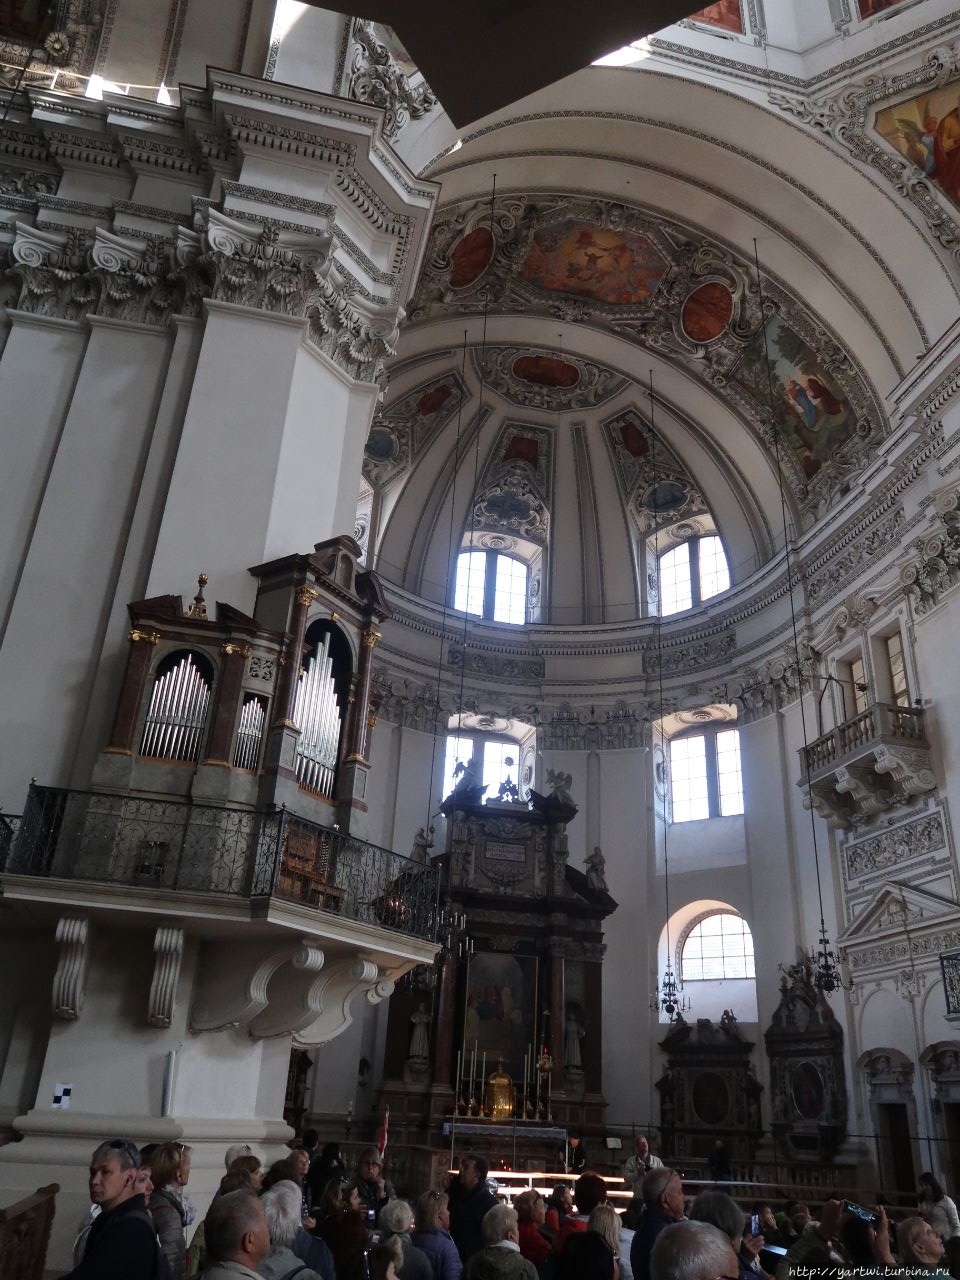 Внутри храм богато убран в барочном стиле и искусно украшен фресками. В соборе имется главный орган с 4000 трубами, который окружают музицирующие ангелы. На нем играл Моцарт и даже написал специально для него несколько хоралов. Зальцбург, Австрия